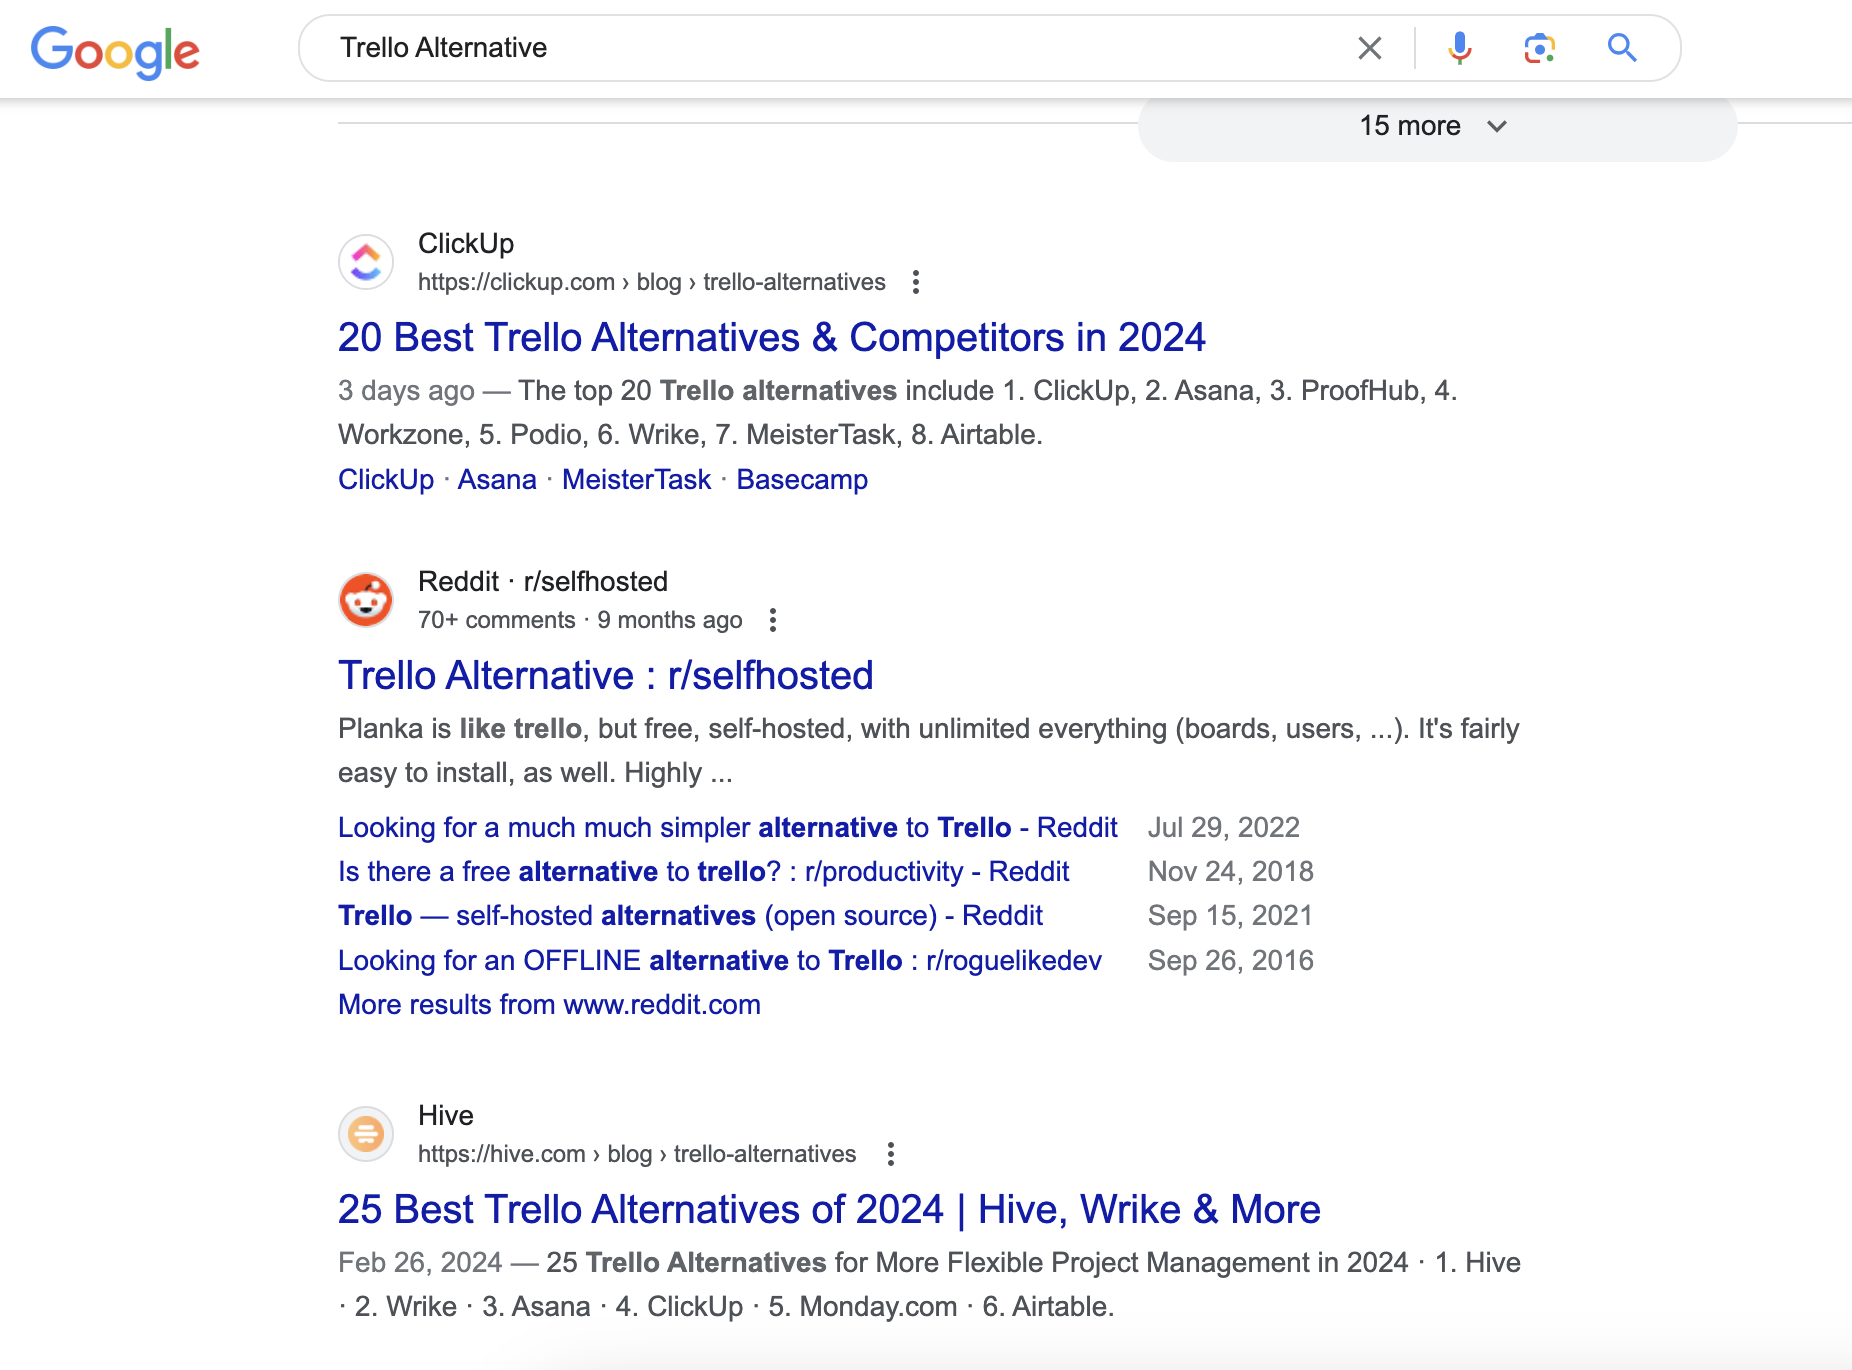 關於 Trello 替代方案的 Reddit 子版塊貼文也出現在該搜尋字詞的 SERP 中的顯著位置